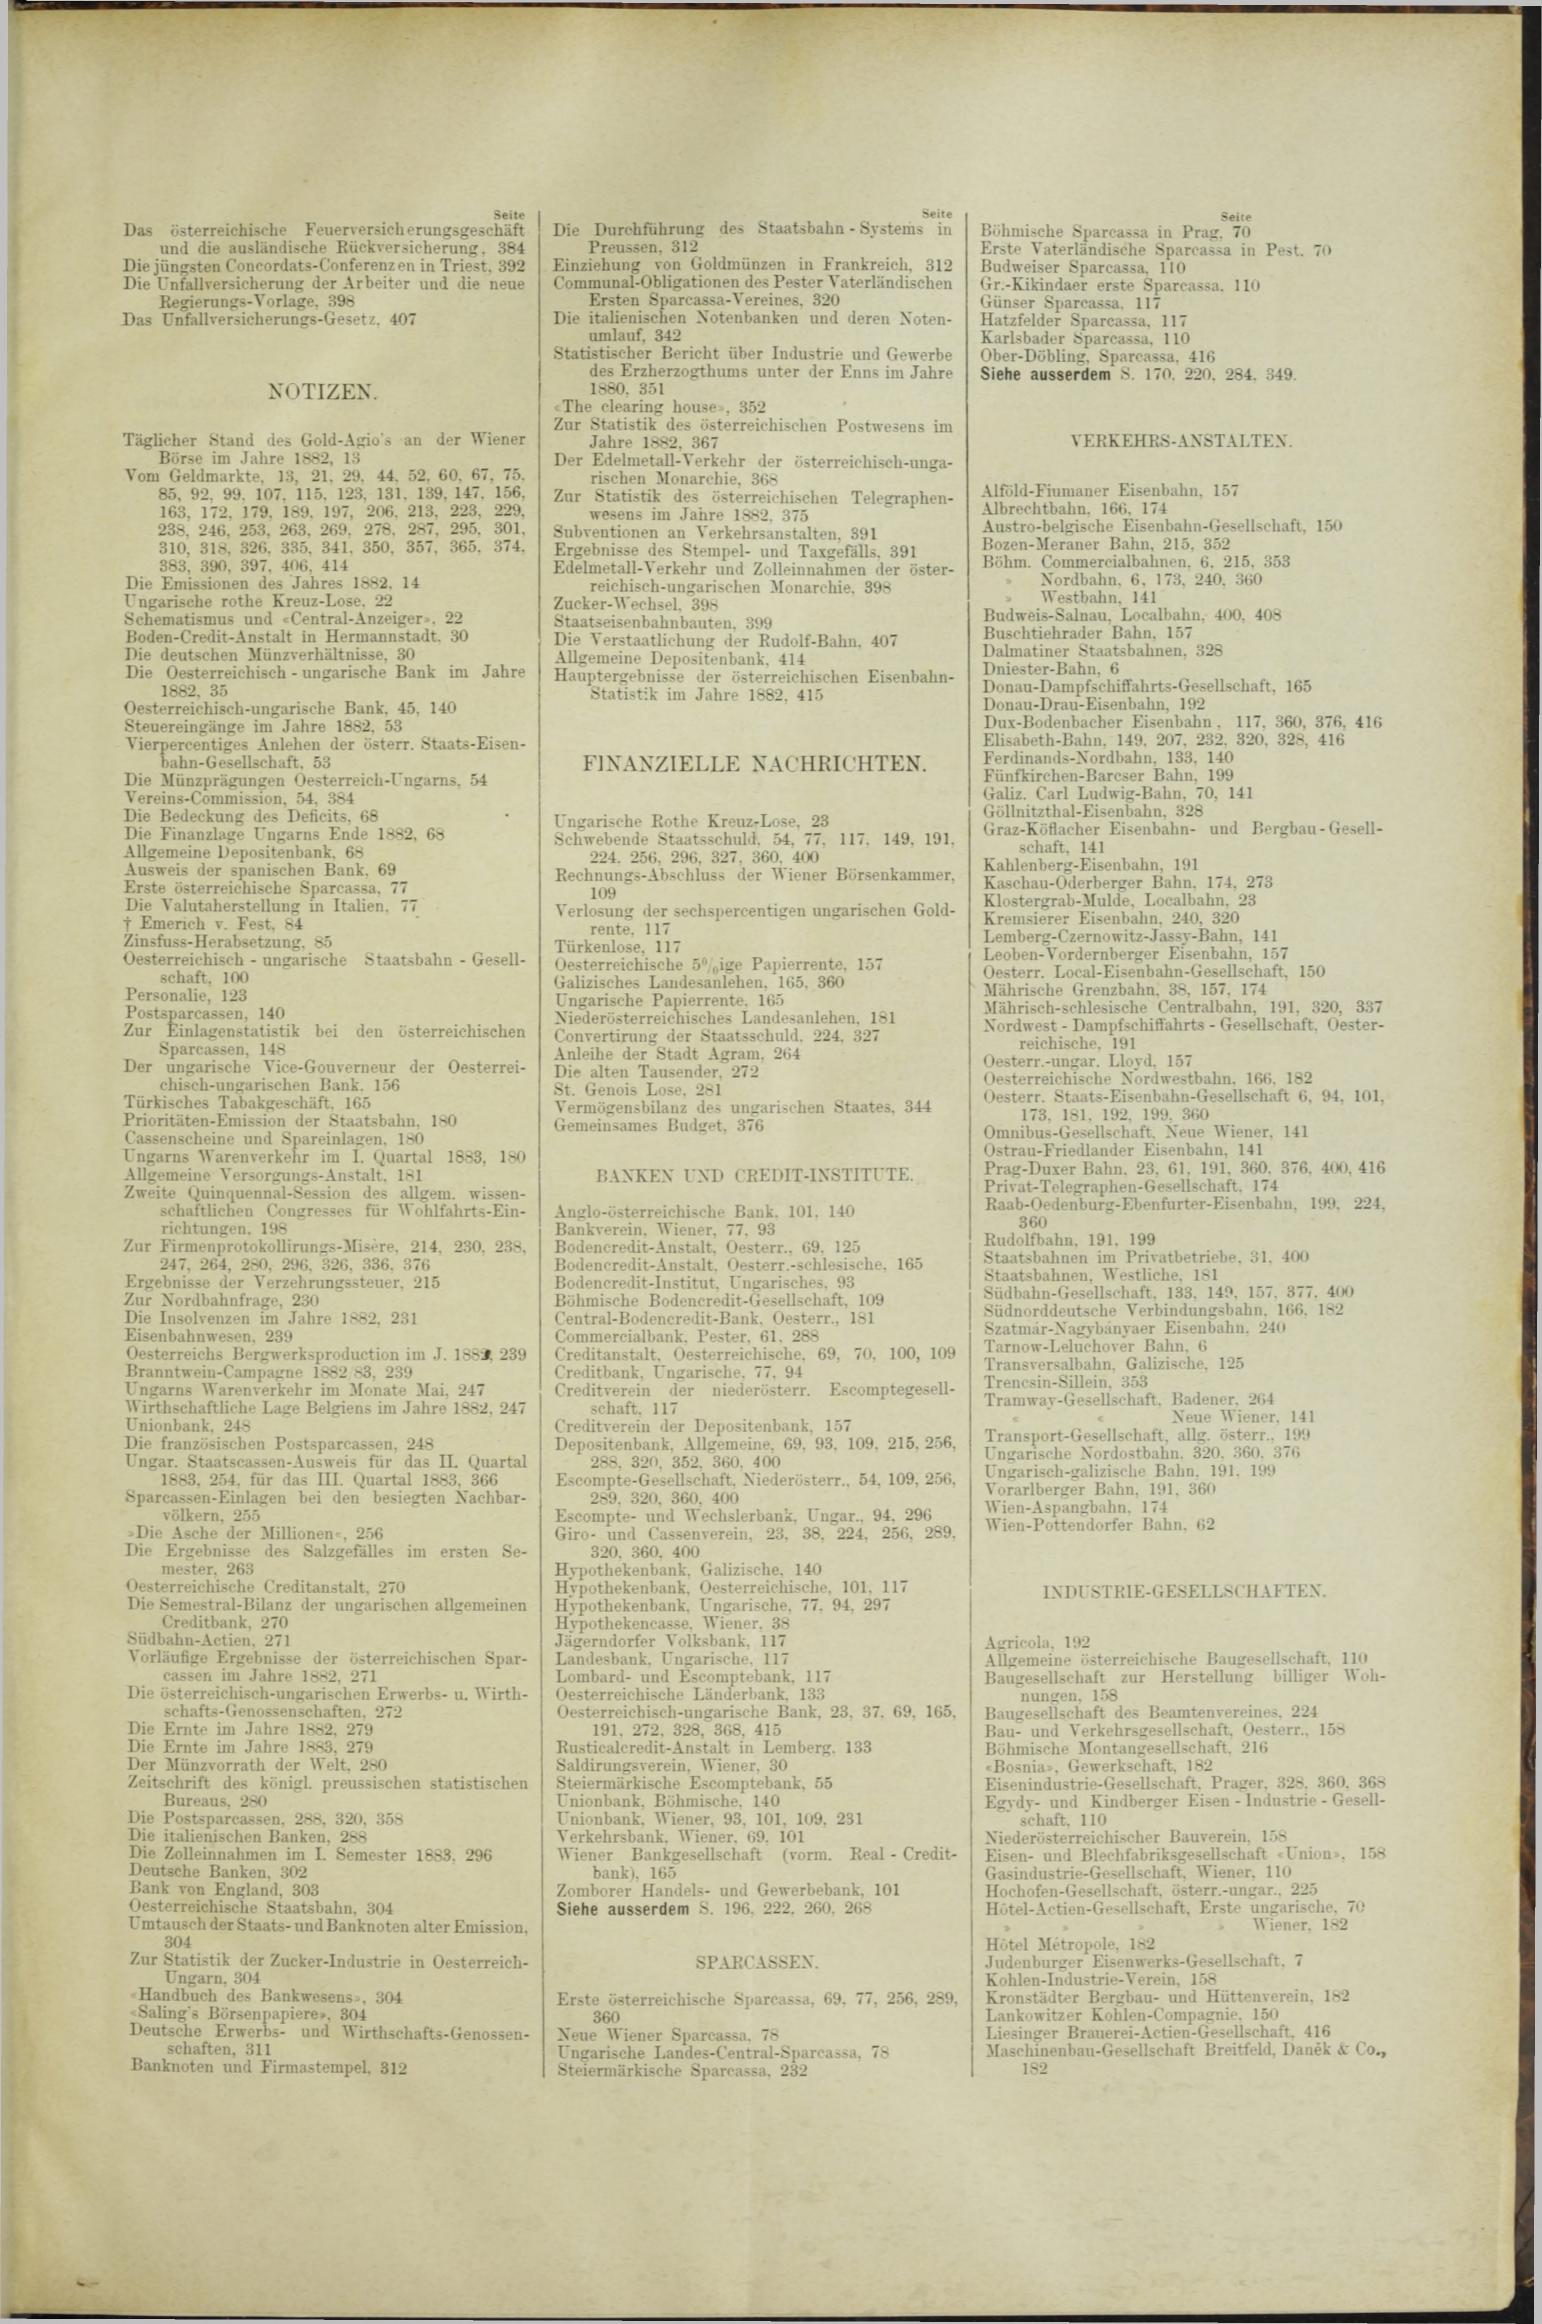 Der Tresor 17.05.1883 - Seite 11